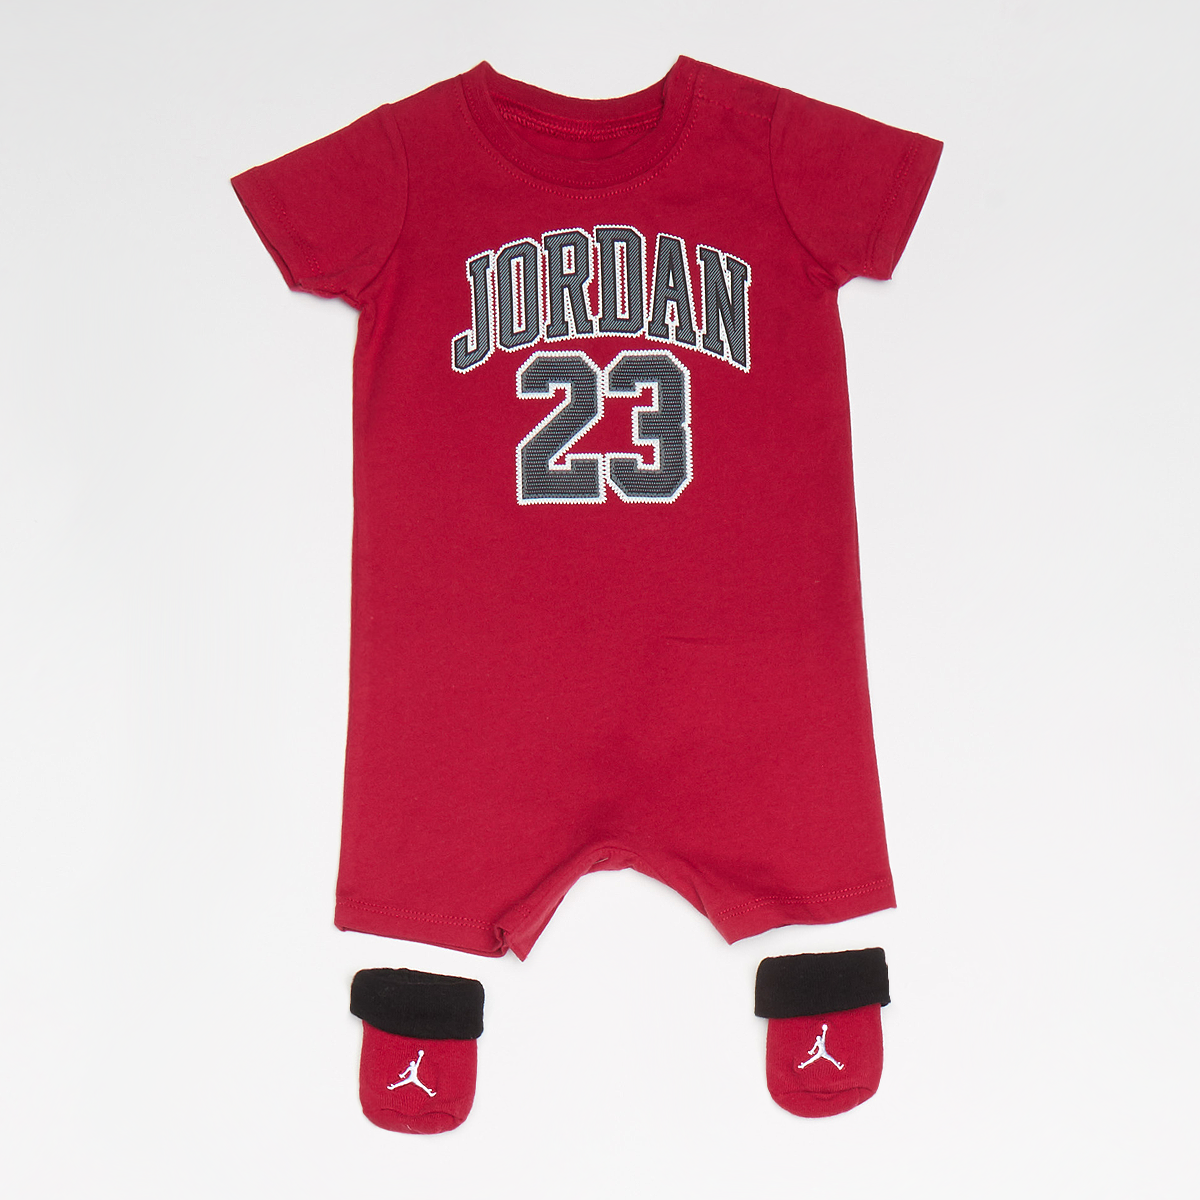 Jordan 23 Romper & Bootie Set Baby sets Kleding red maat: 0m-6m beschikbare maaten:0m-6m